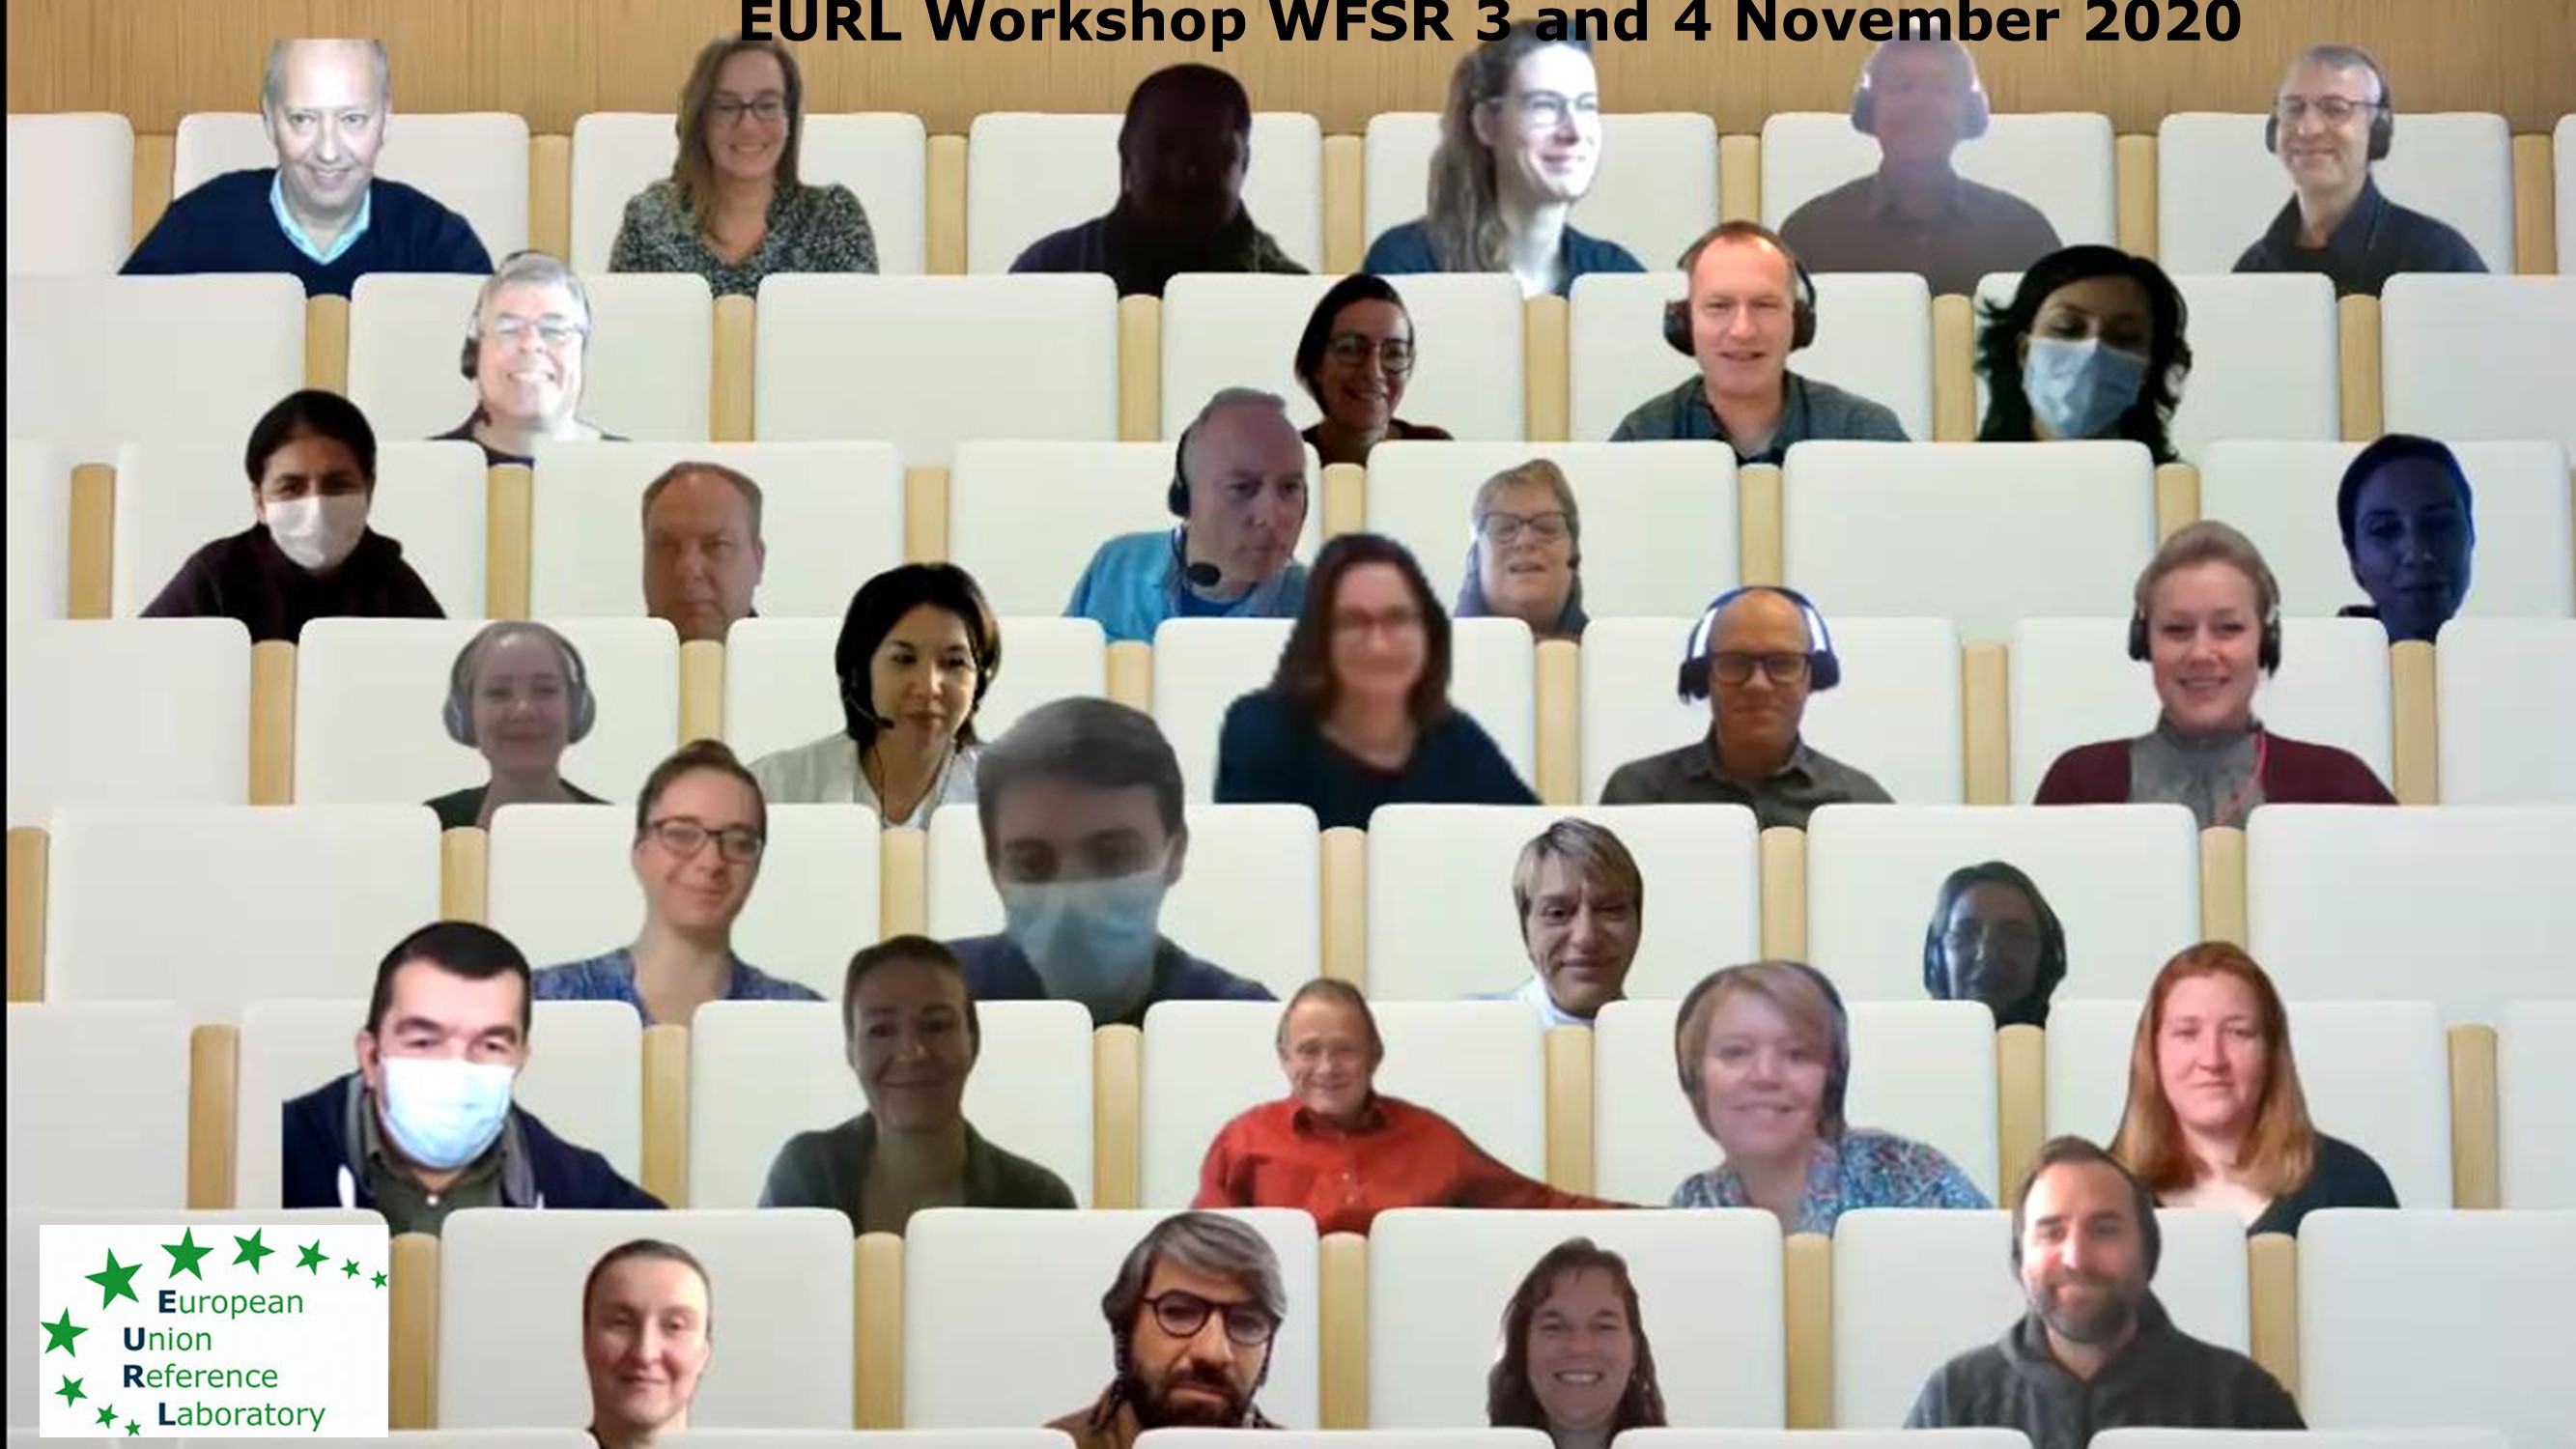 EURL_WFSR_workshop_picture_3_4_november_2020.jpg